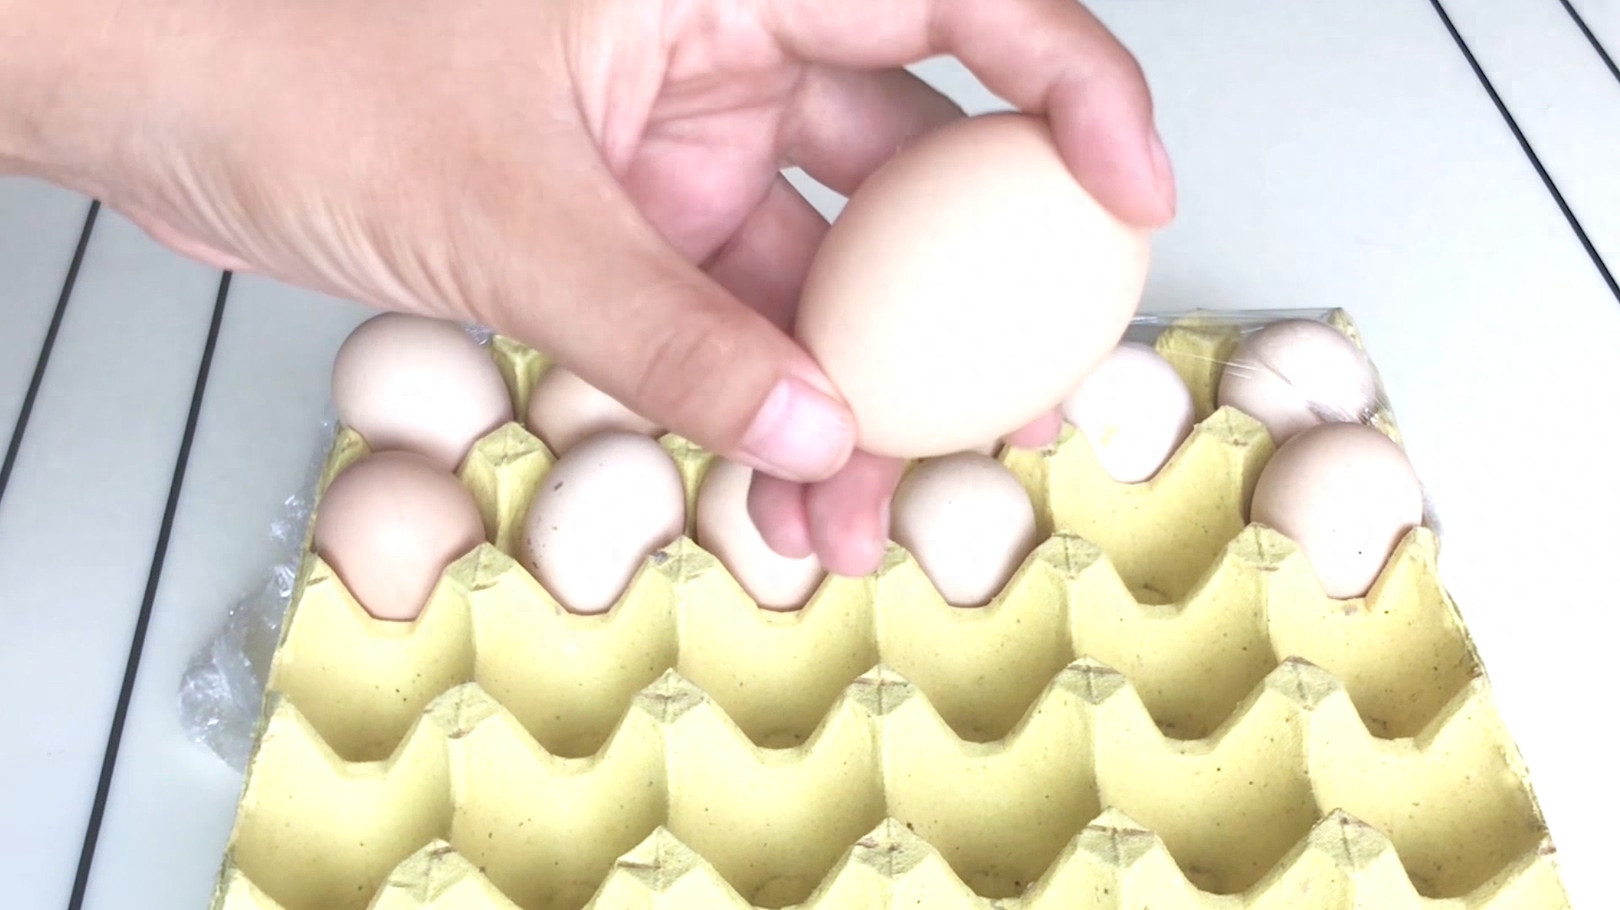 鸡蛋存放大头朝上还是小头朝上_放鸡蛋大小头怎么放_鸡蛋大头朝上还是小头朝上存放